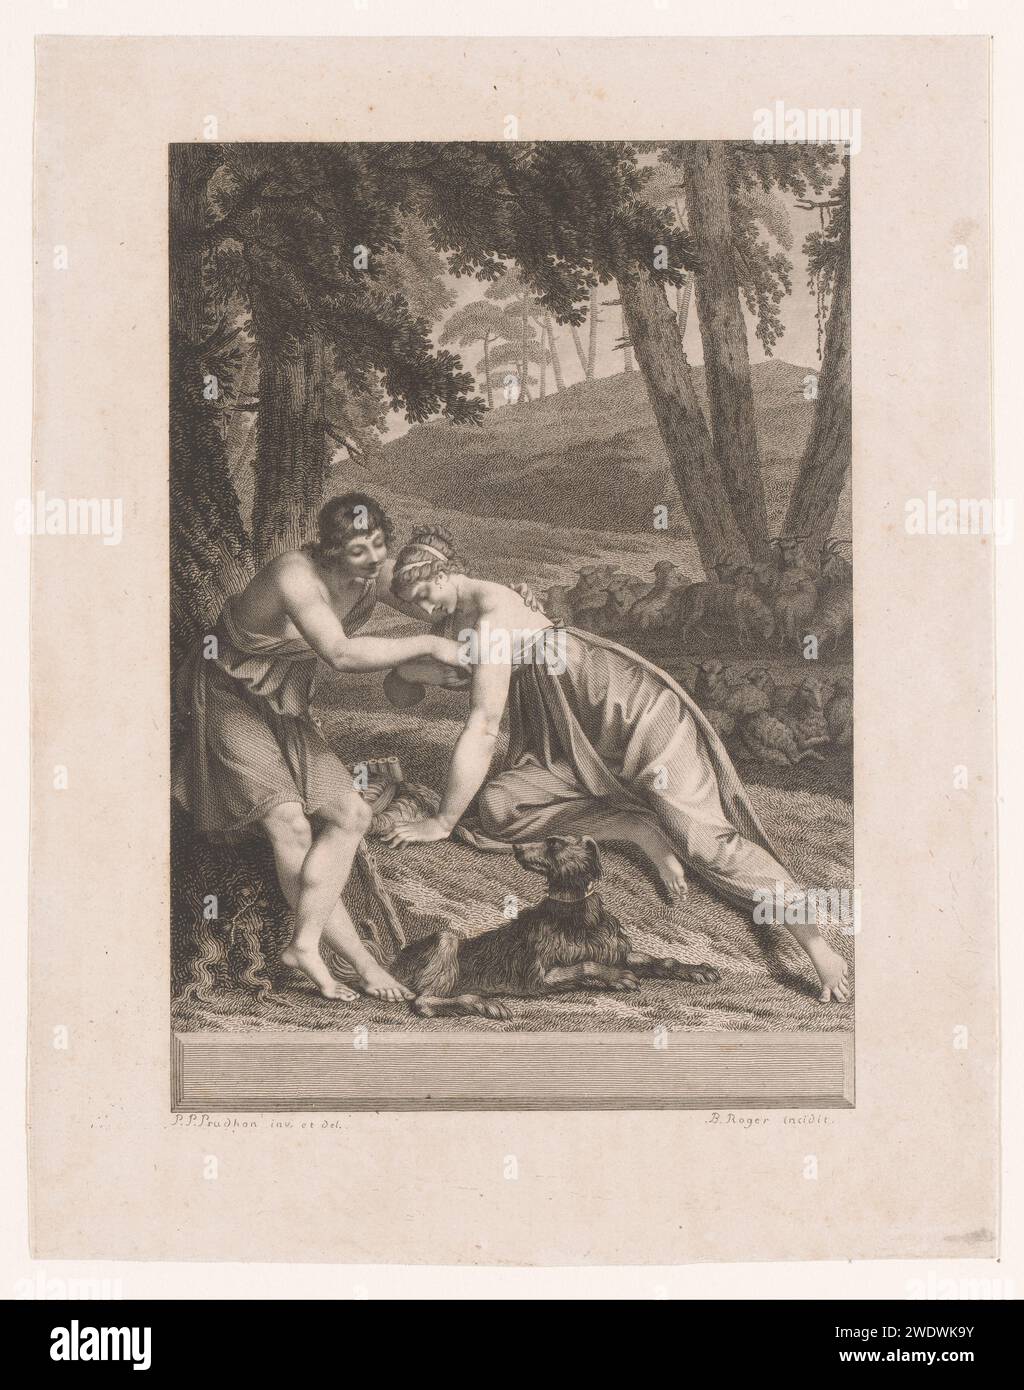 Daphnis ottiene un cricket dall'abito di Chloë, Barthélémy Joseph Fulcran Roger, dopo Pierre Prud'hon, nel 1800 stampa di Parigi il giornale di incisione Daphnis (nella mitologia greca un pastore che inventò la poesia pastorale. Chloe Foto Stock